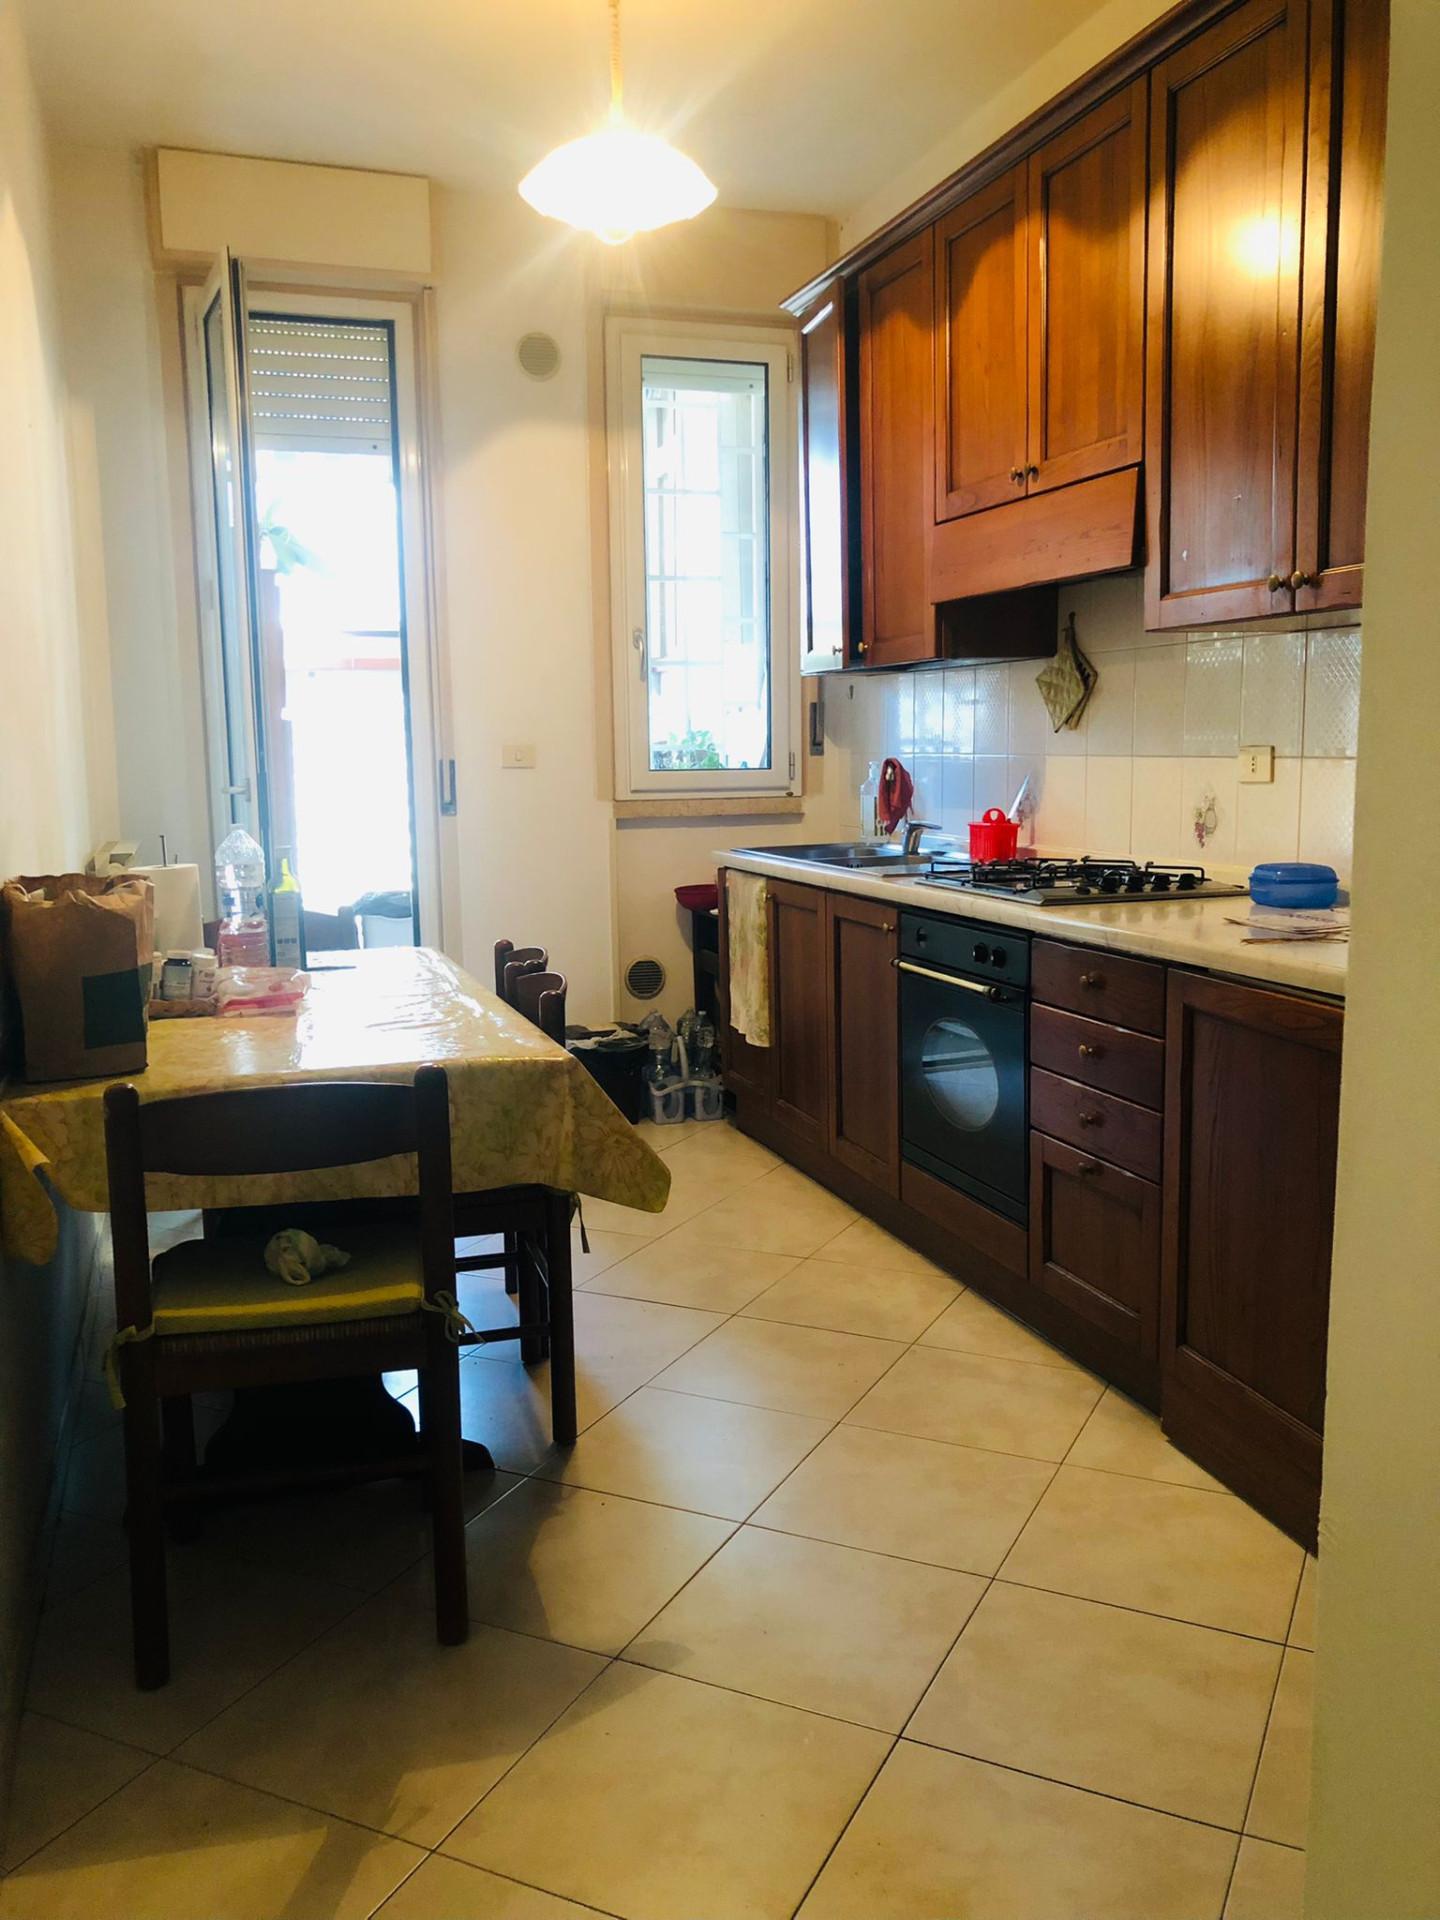 Appartamento con terrazzi, Grosseto gorarella